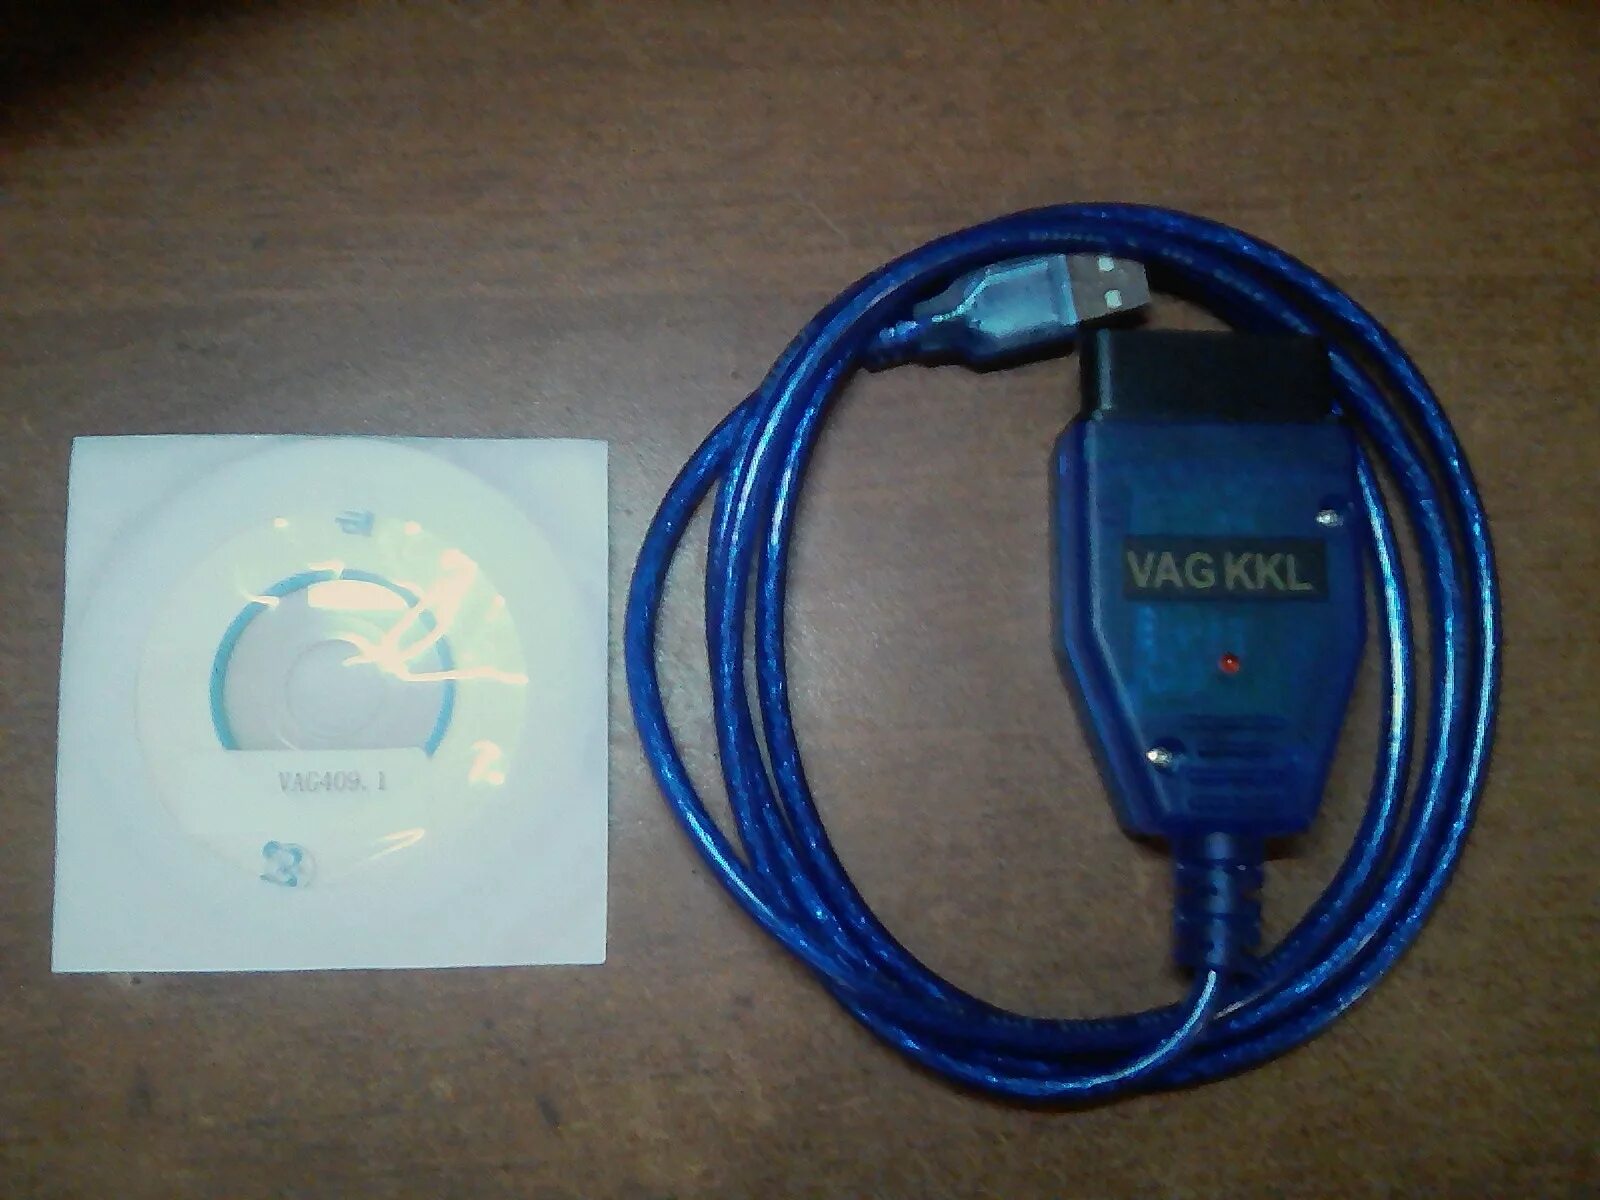 Соединение ваг цена. Диагностический кабель для Дэу Нексия n100. KKL VAG-com for 409.1. Адаптер сканер ошибок Део Нексия 2010 года. Диагностический разъем Daewoo Nexia.